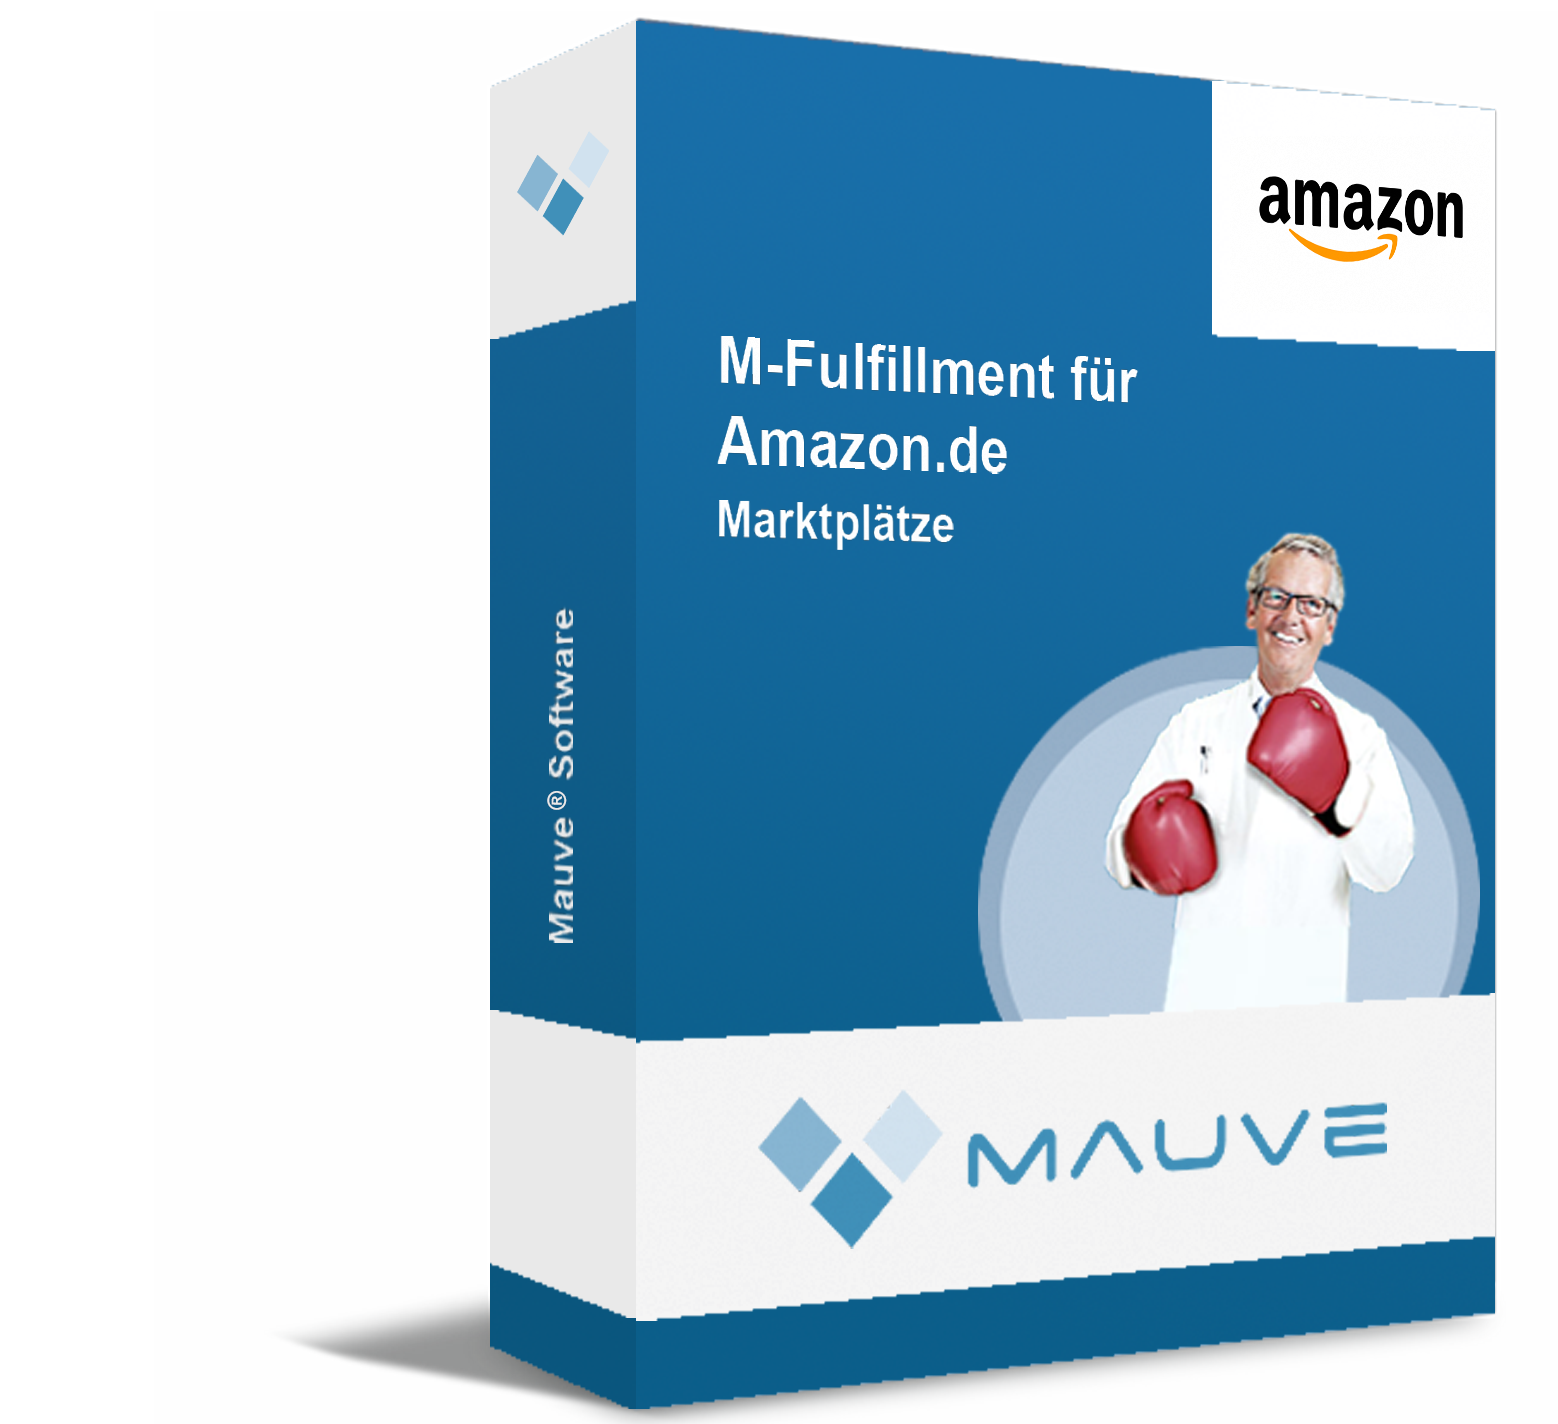 M-Fulfillment für Amazon.de